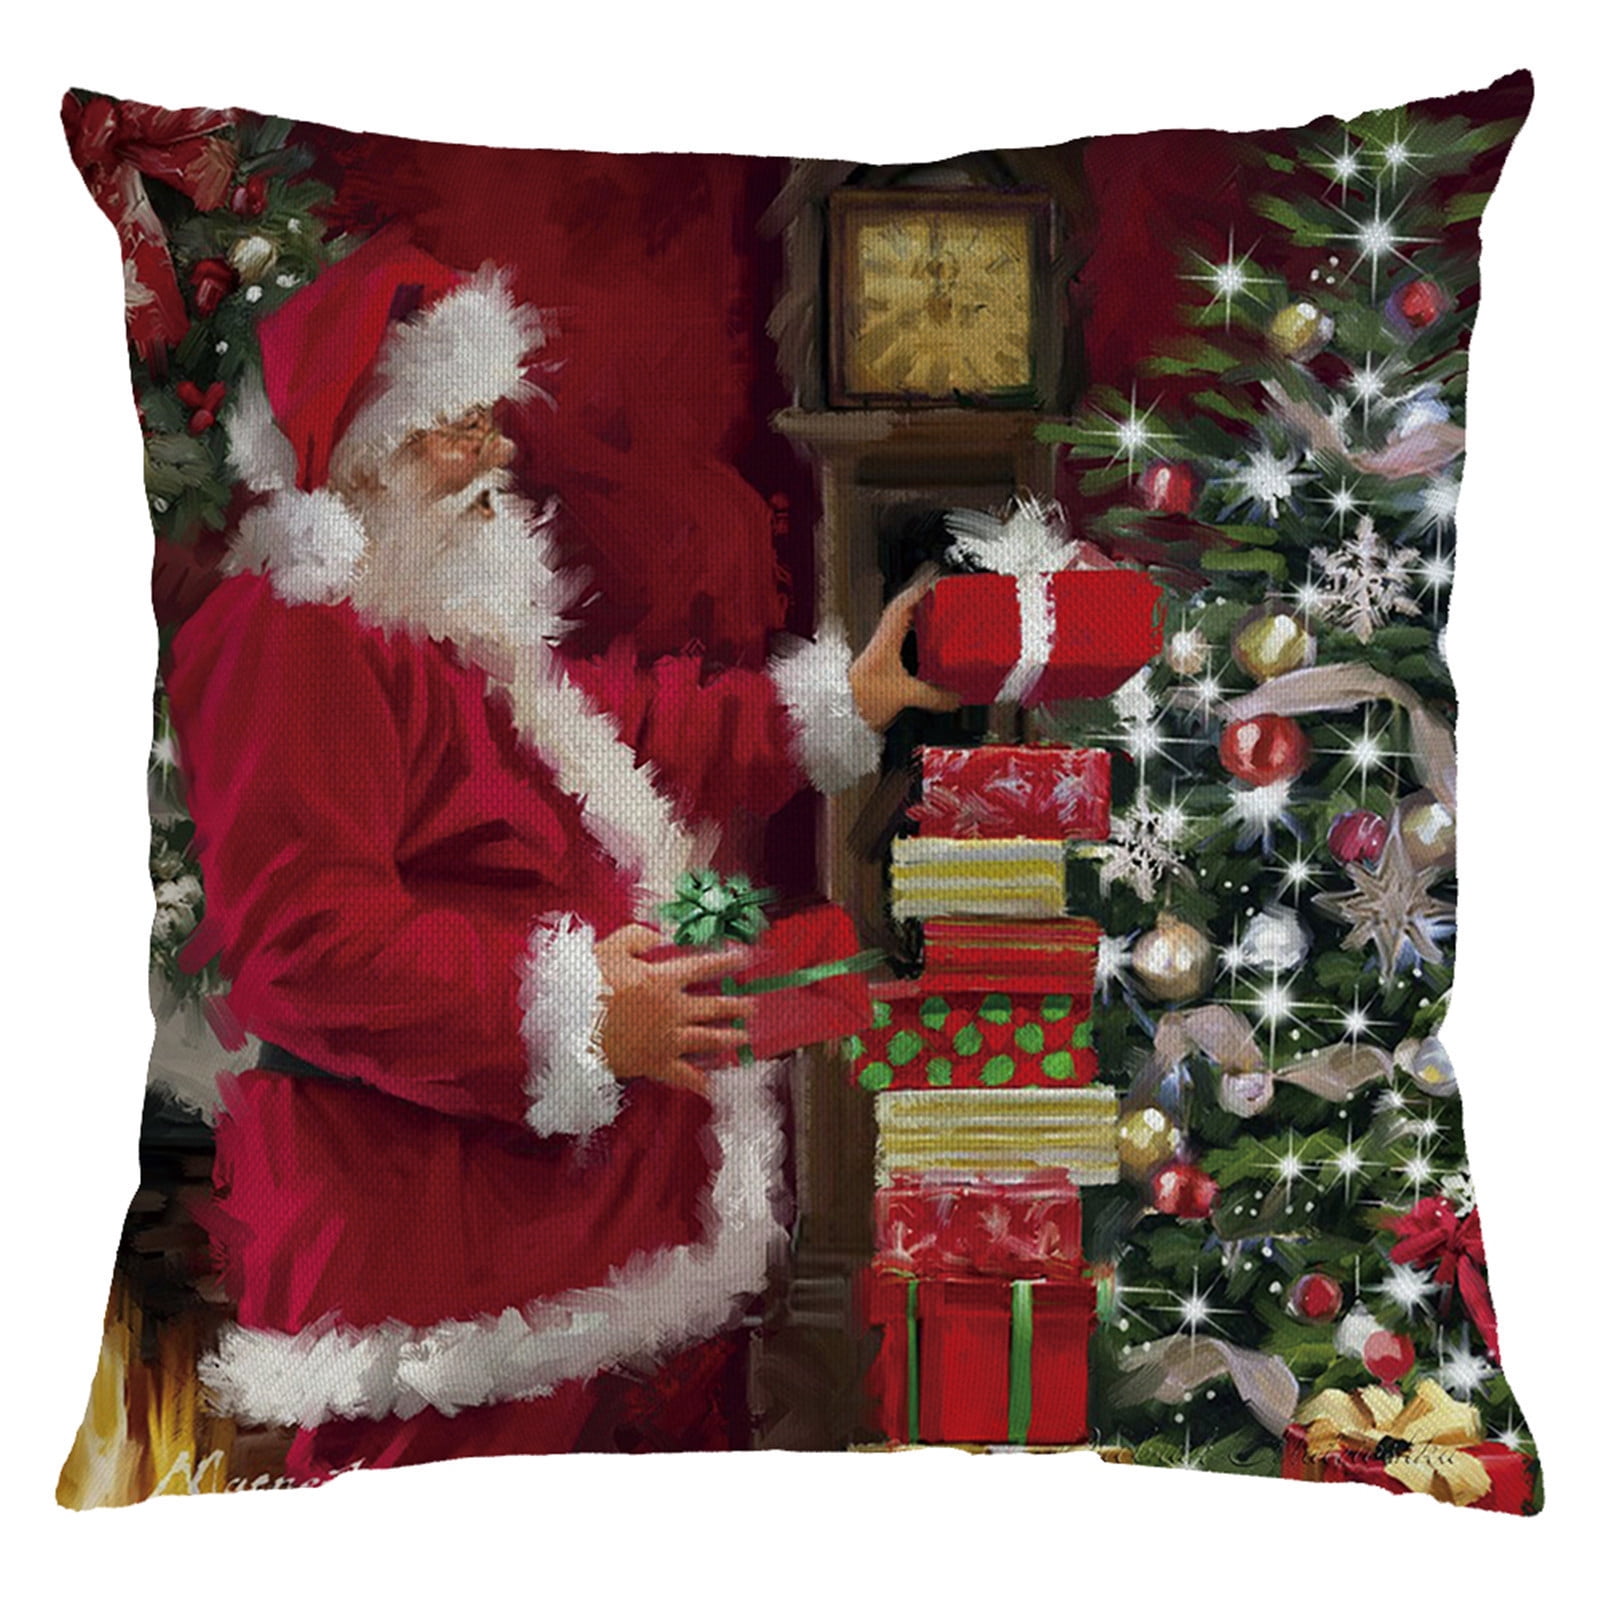 Christmas Santa Claus Pillow Throw Case Sofa Waist Cushion Cover Home Decor Gift